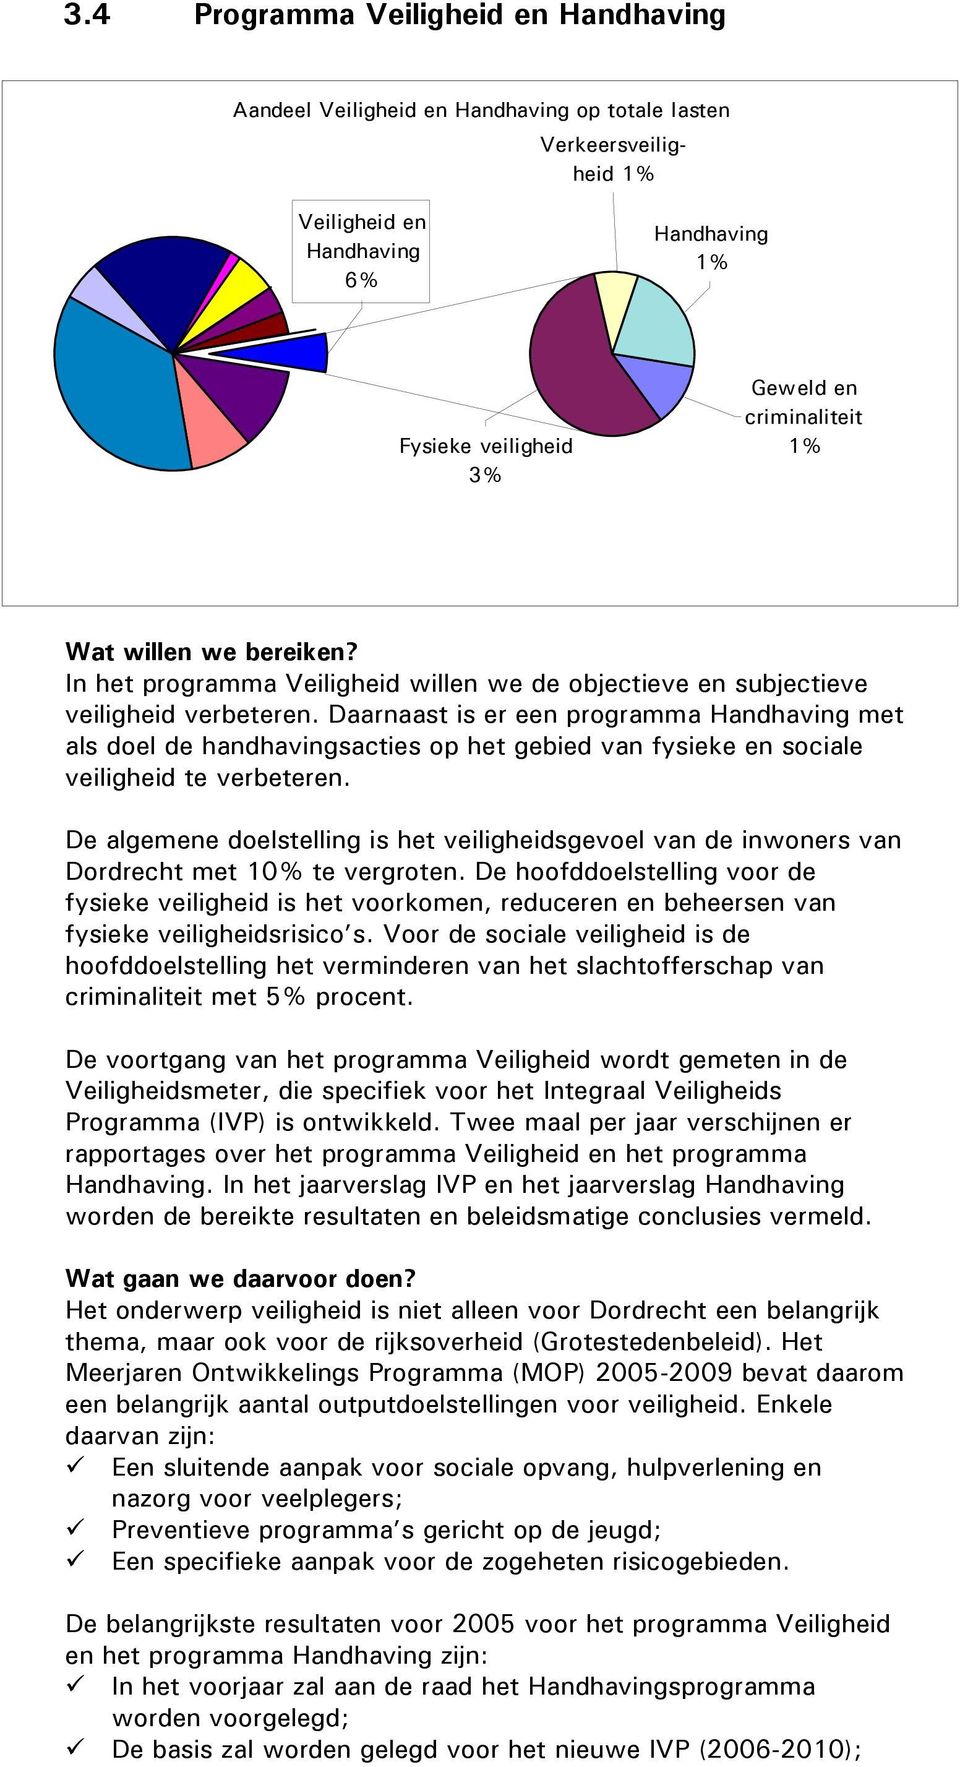 De algemene doelstelling is het veiligheidsgevoel van de inwoners van Dordrecht met 10% te vergroten.